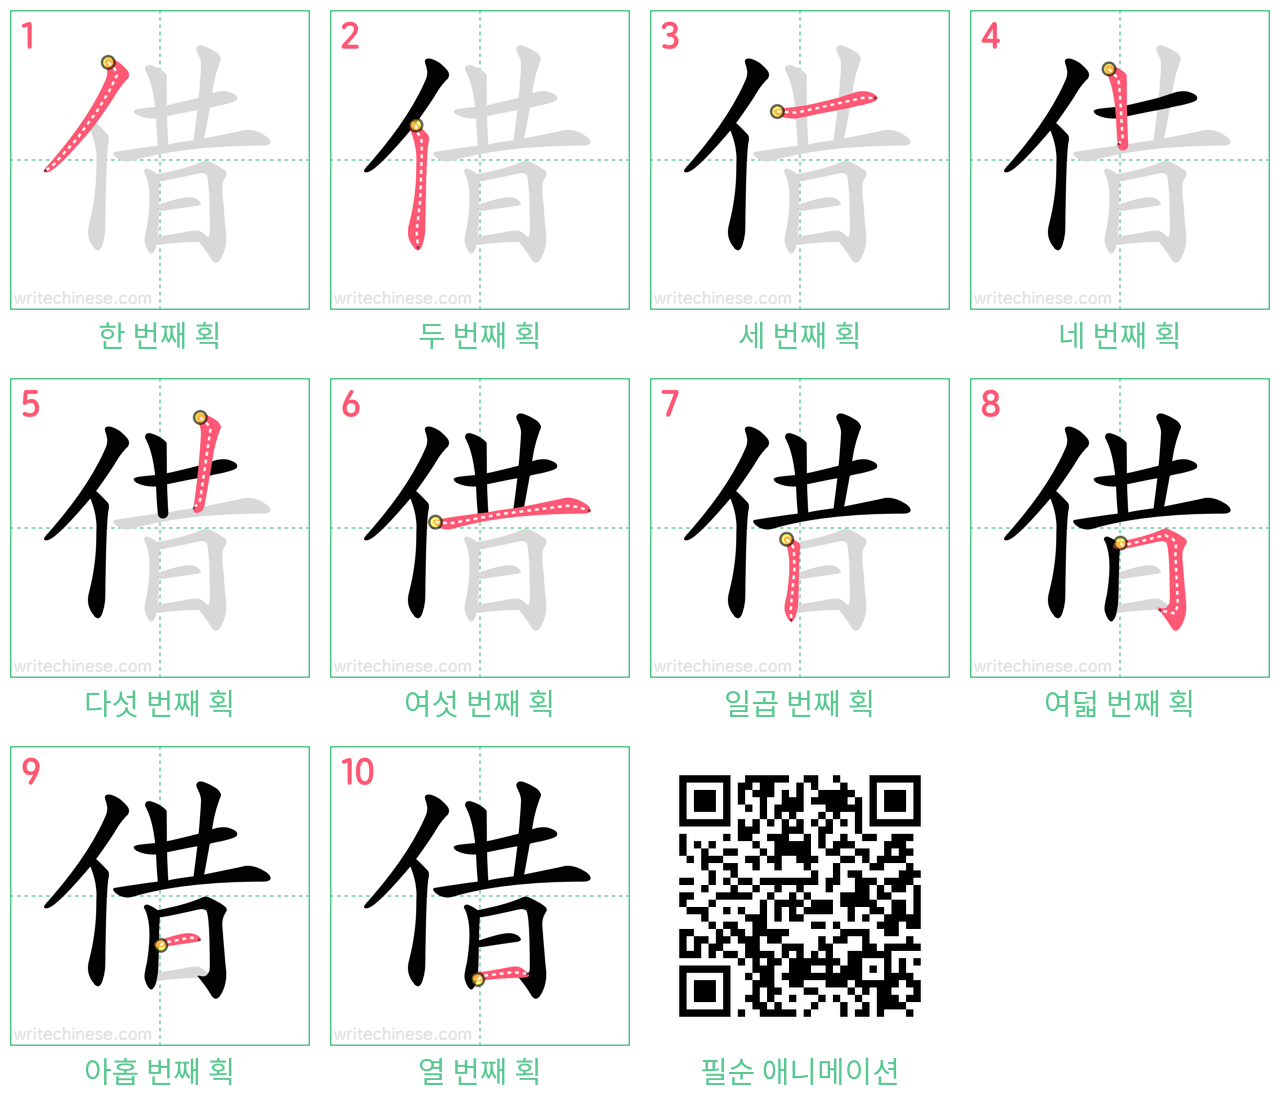 借 step-by-step stroke order diagrams